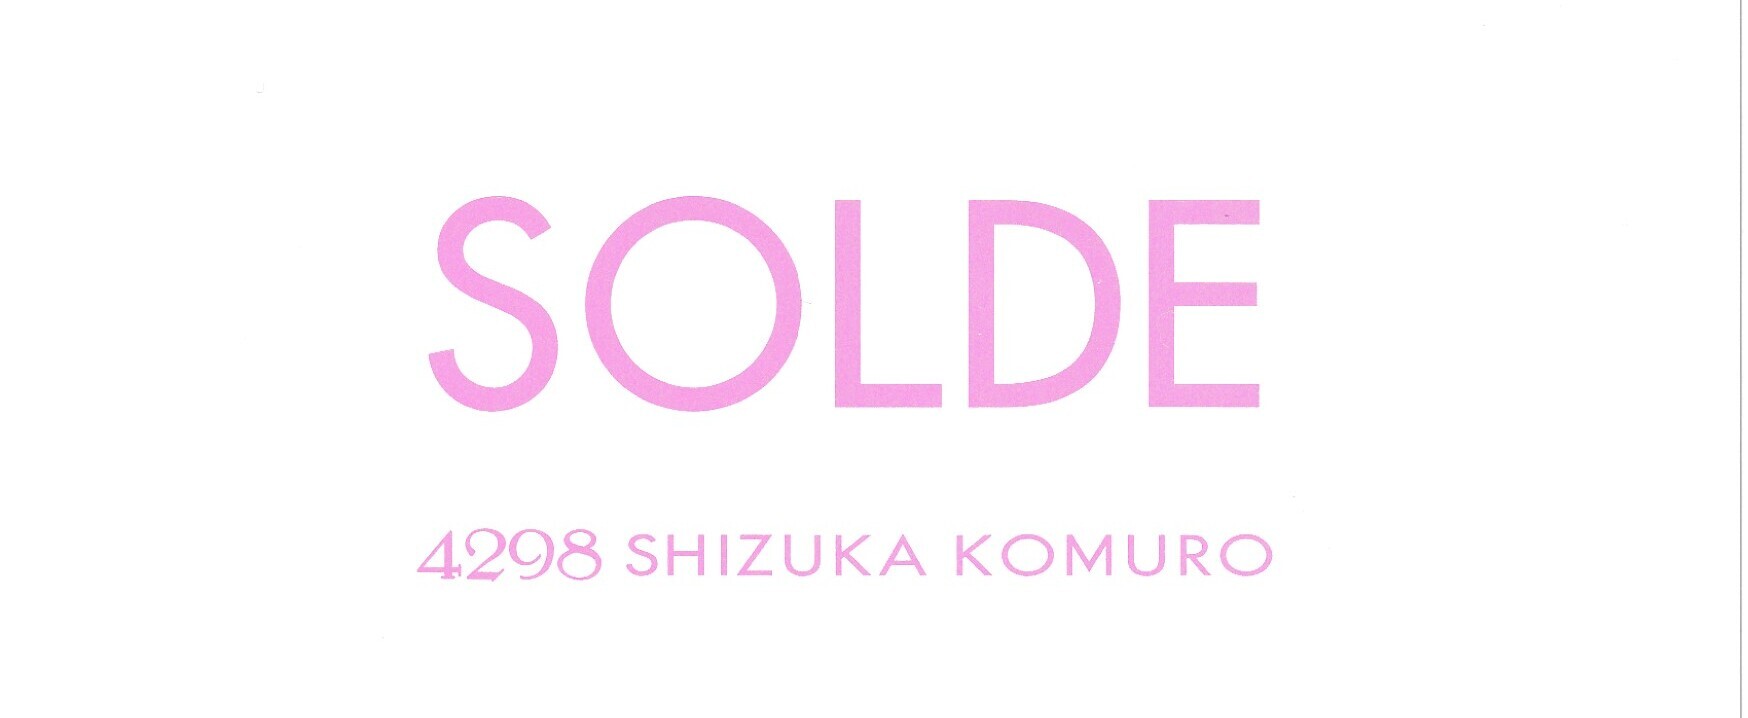 ファッション通販の4298 SHIZUKA KOMURO │ 4298シヅカコムロ 公式通販サイト